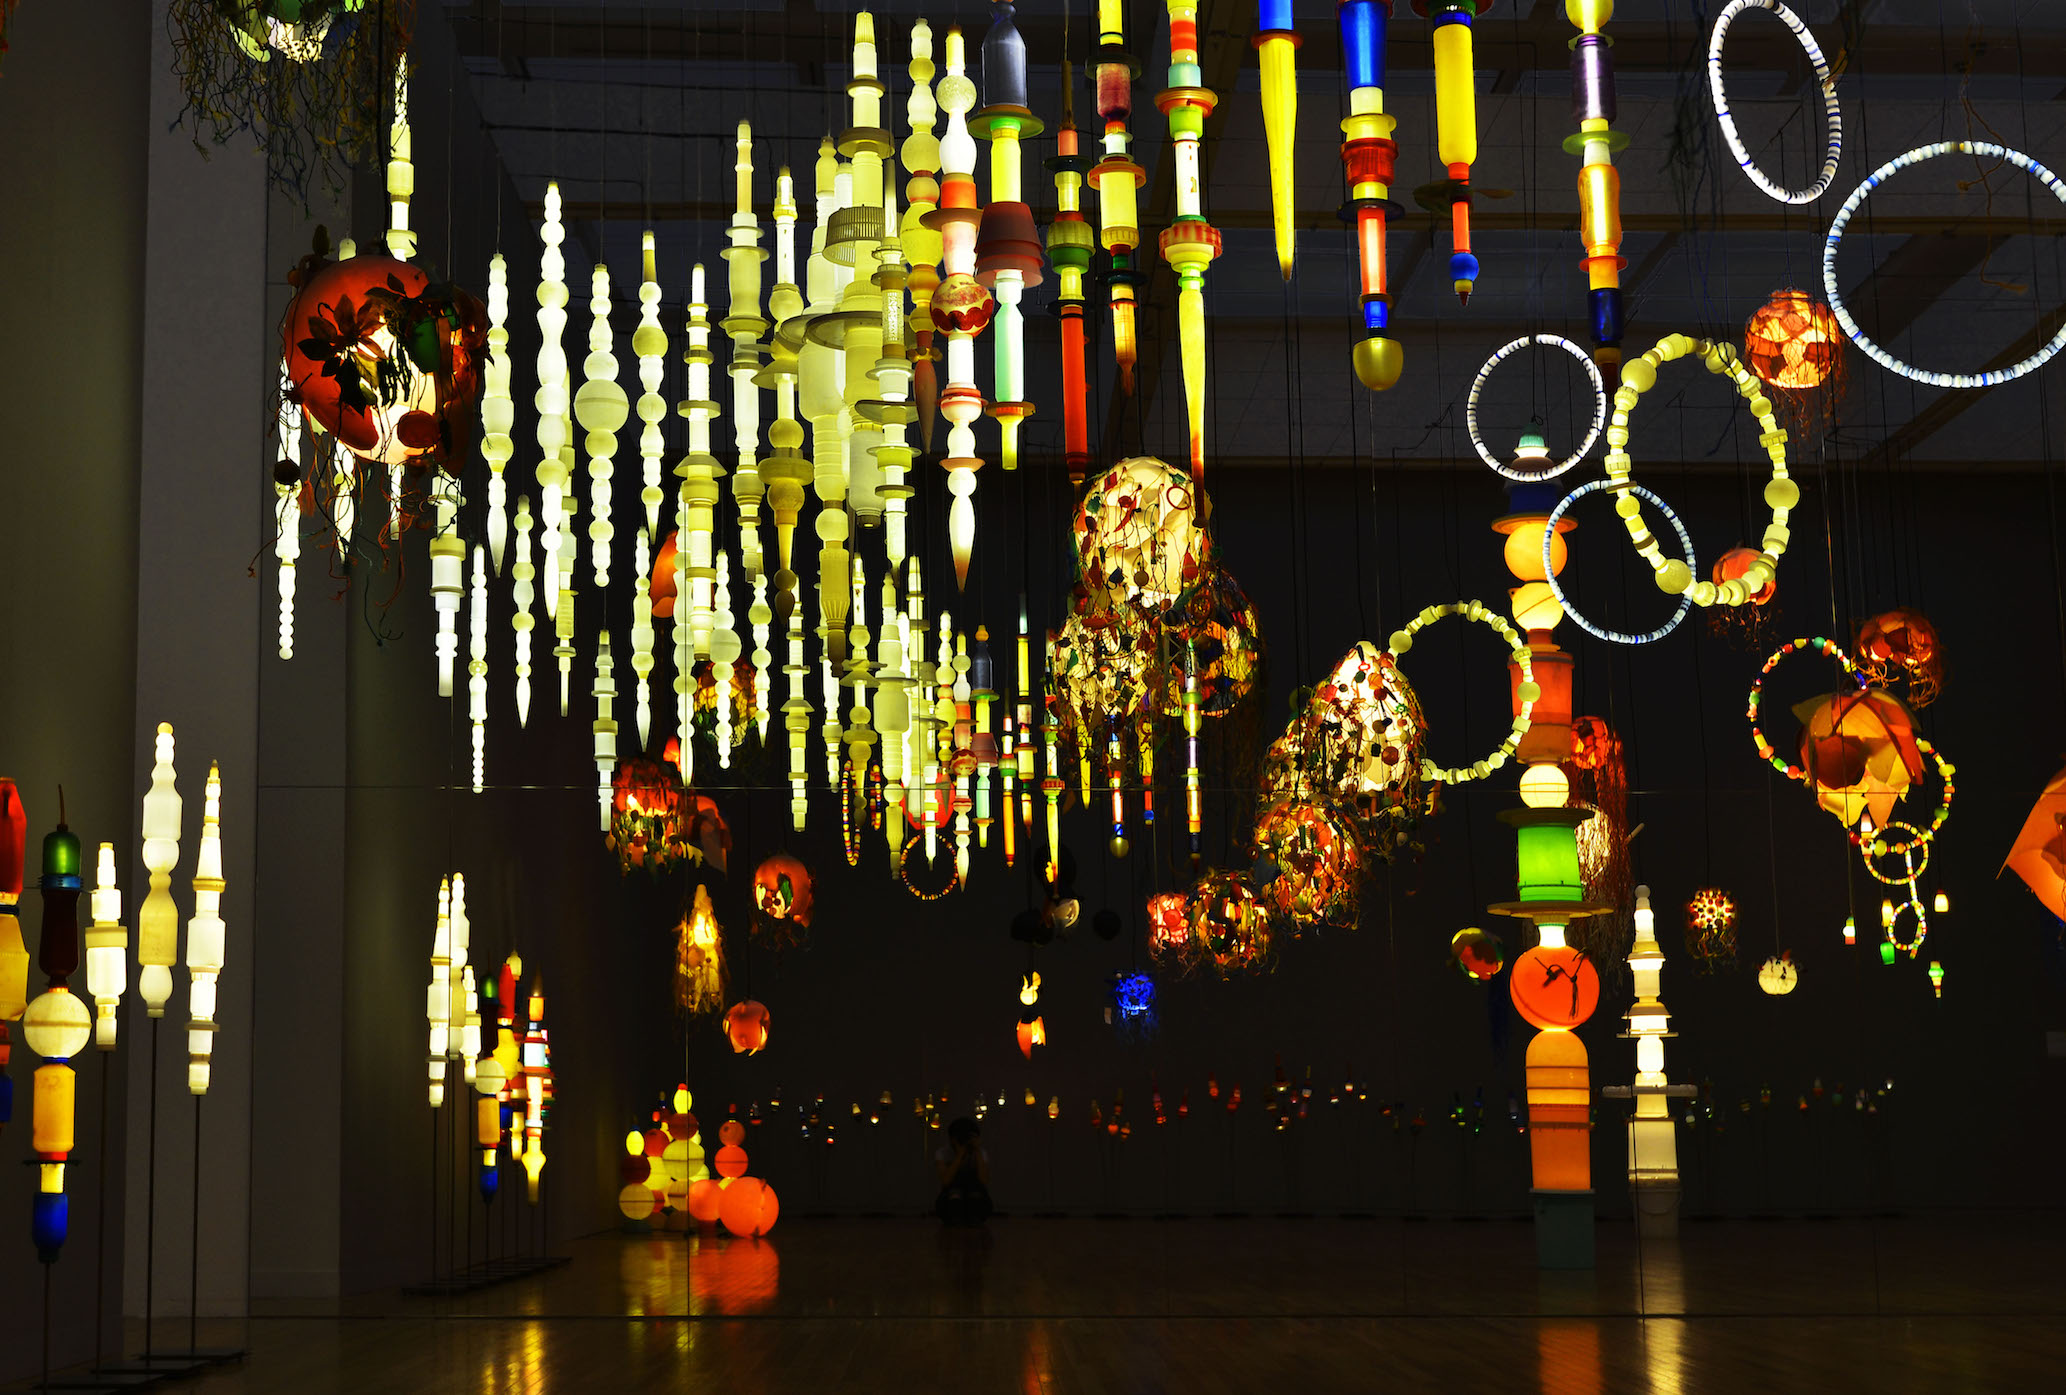 ヨーガン レールが晩年つくり続けた、廃品から生まれた美しい照明たち。金沢21世紀美術館（石川県・金沢市）にて「ヨーガン レール 文明の終わり」展開催中  | ニュース | DIVERSITY IN THE ARTS TODAY